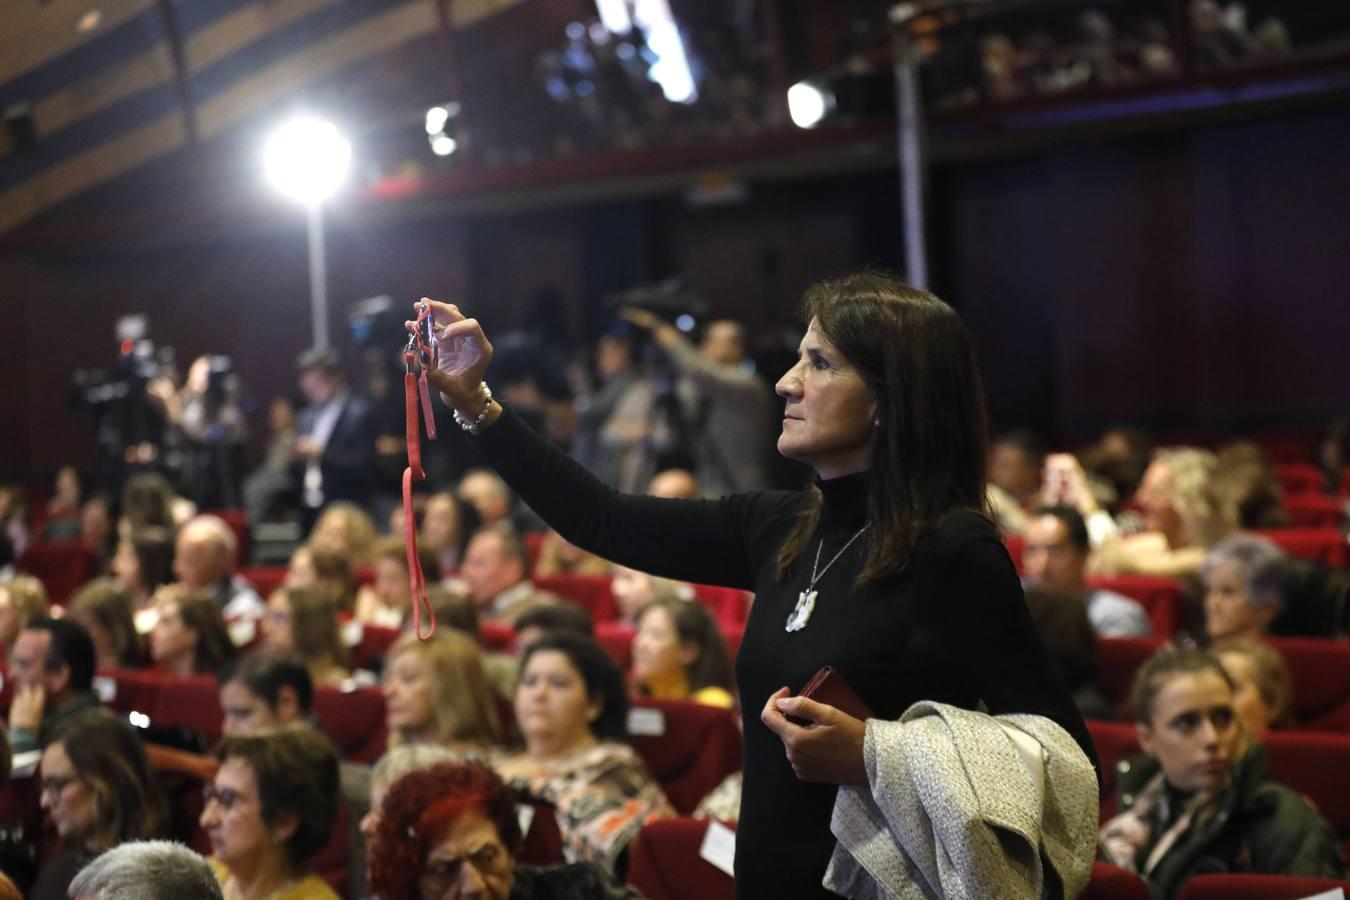 La gala de los Premios Menina en Córdoba, en imágenes